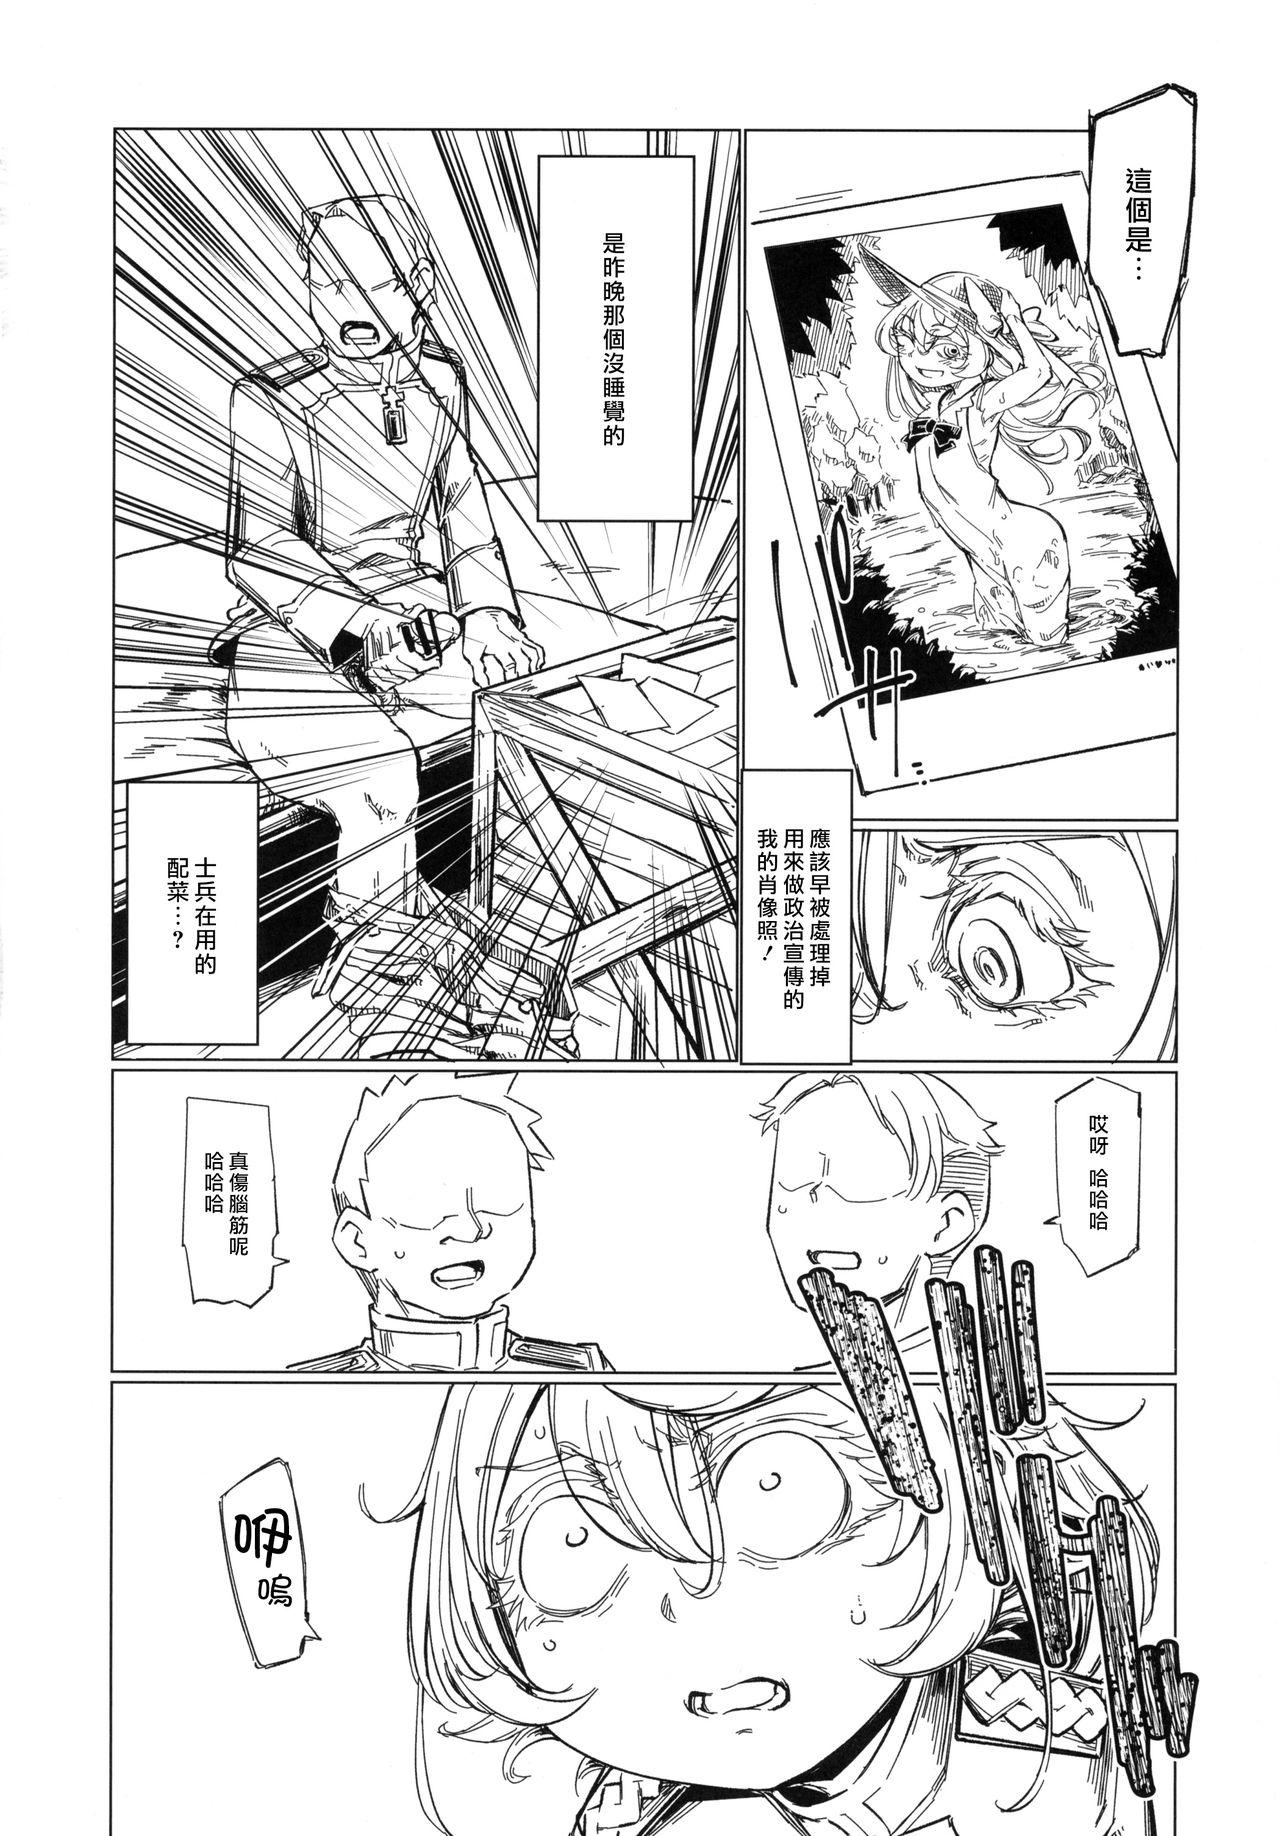 Solo Female Saizensen no Degrechaf Ojisan - Youjo senki Futa - Page 9